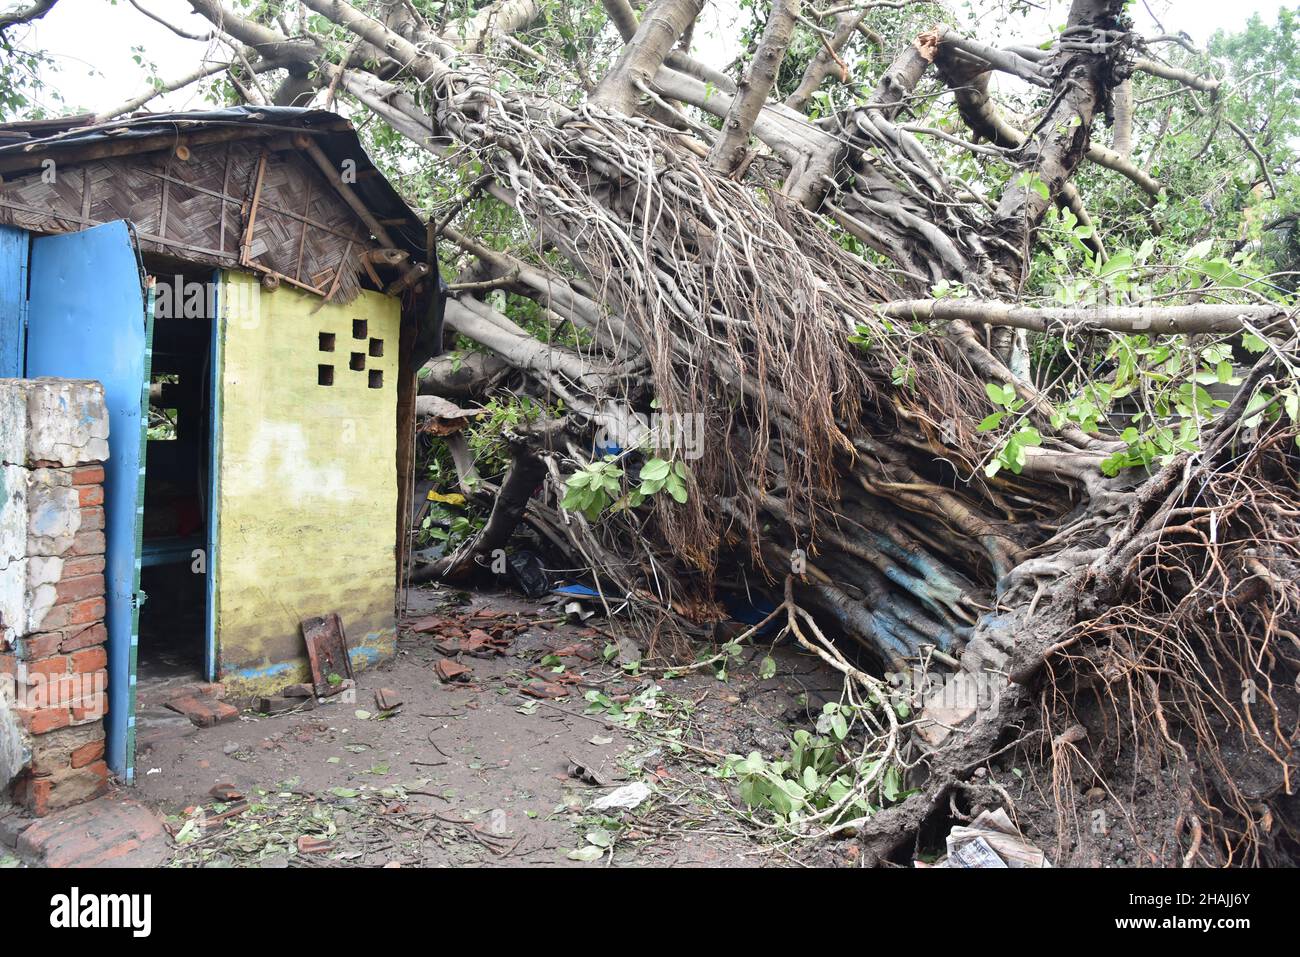 Tempesta super ciclonica Amphan era un potente e catastrofico ciclone tropicale che ha causato danni diffusi nell'India orientale, in particolare nel Bengala occidentale e in Odisha. Il ciclone ha ucciso almeno 84 persone in India e Bangladesh. Kolkata, India. Foto Stock